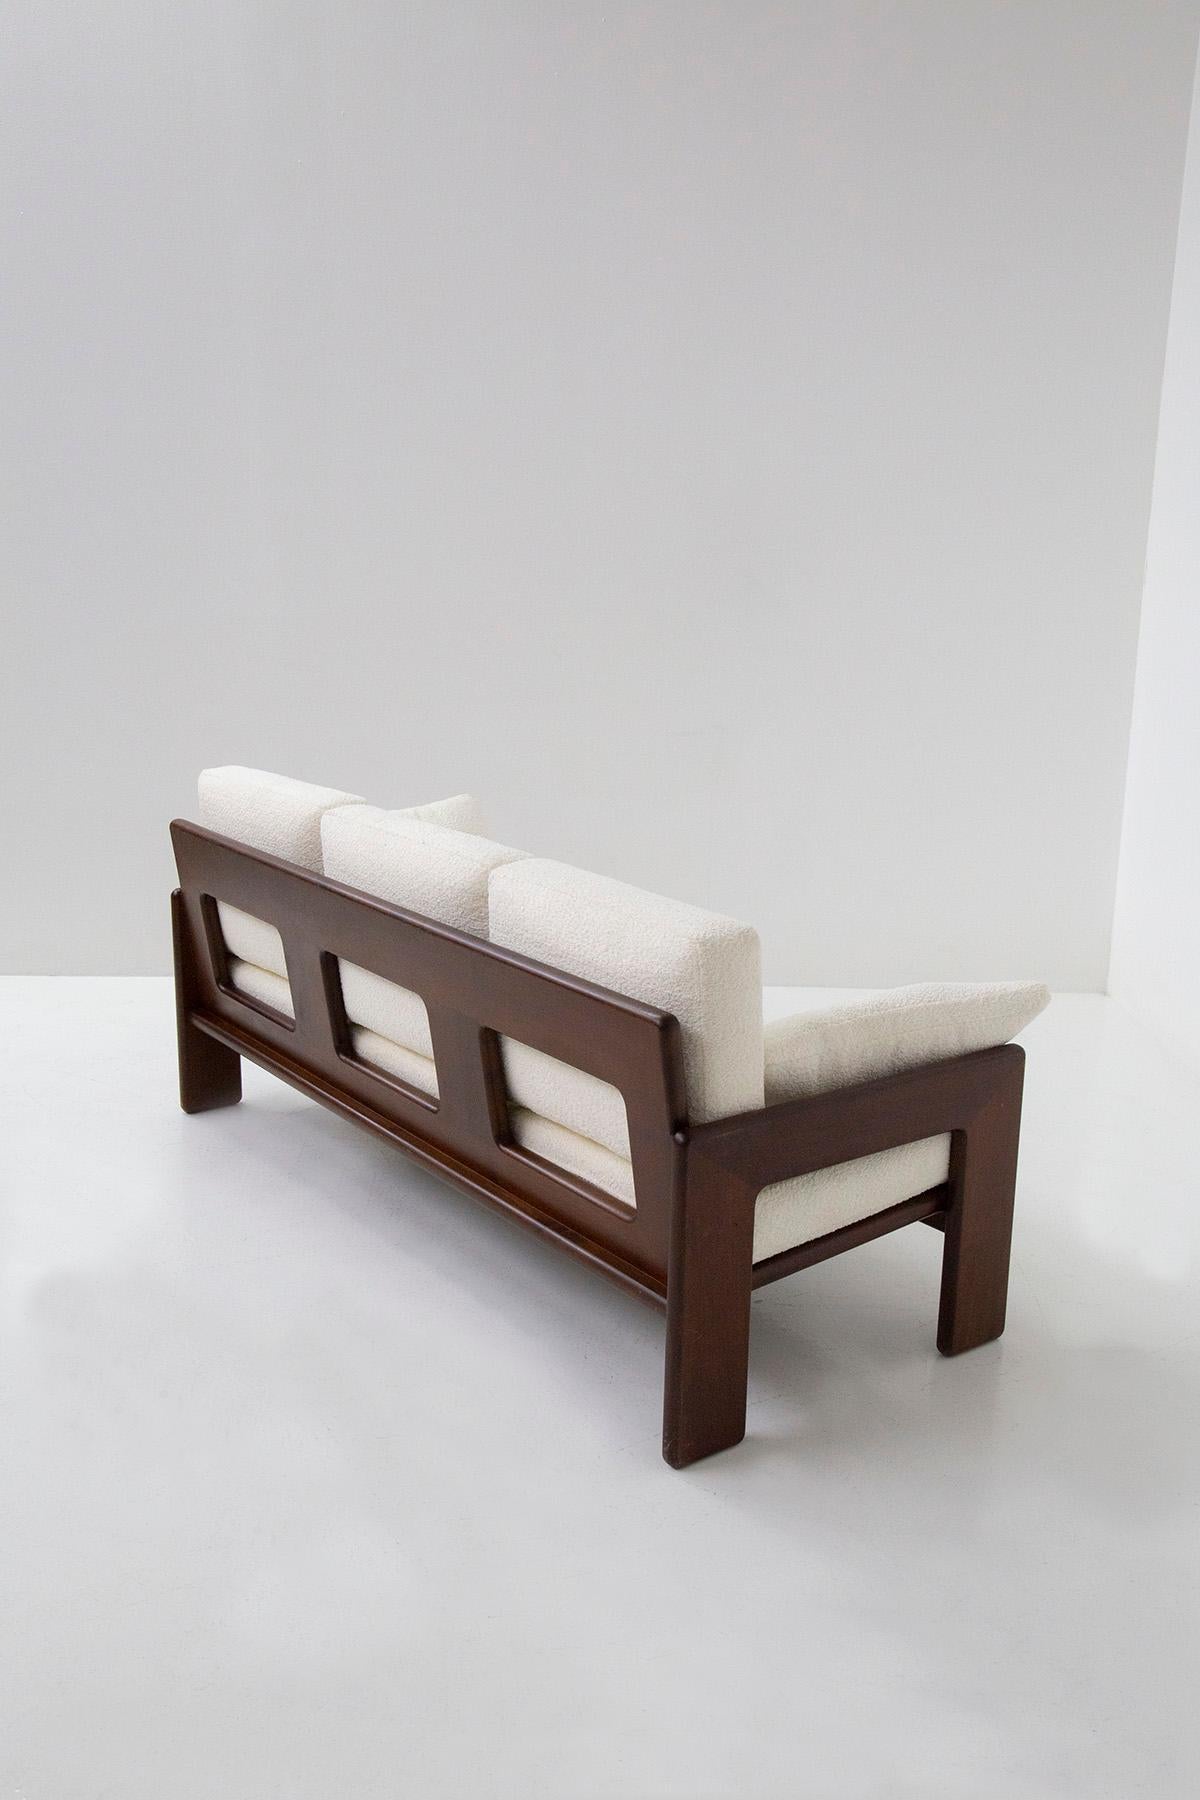 Das Sofa Serafino Arrighi aus den 1960er Jahren ist ein elegantes italienisches Sofa mit modernistischem Design. Er hat einen Holzrahmen mit scharfen, klaren Linien, während die Rückseite ein geometrisches Linienspiel aufweist. Die Armlehnen sind